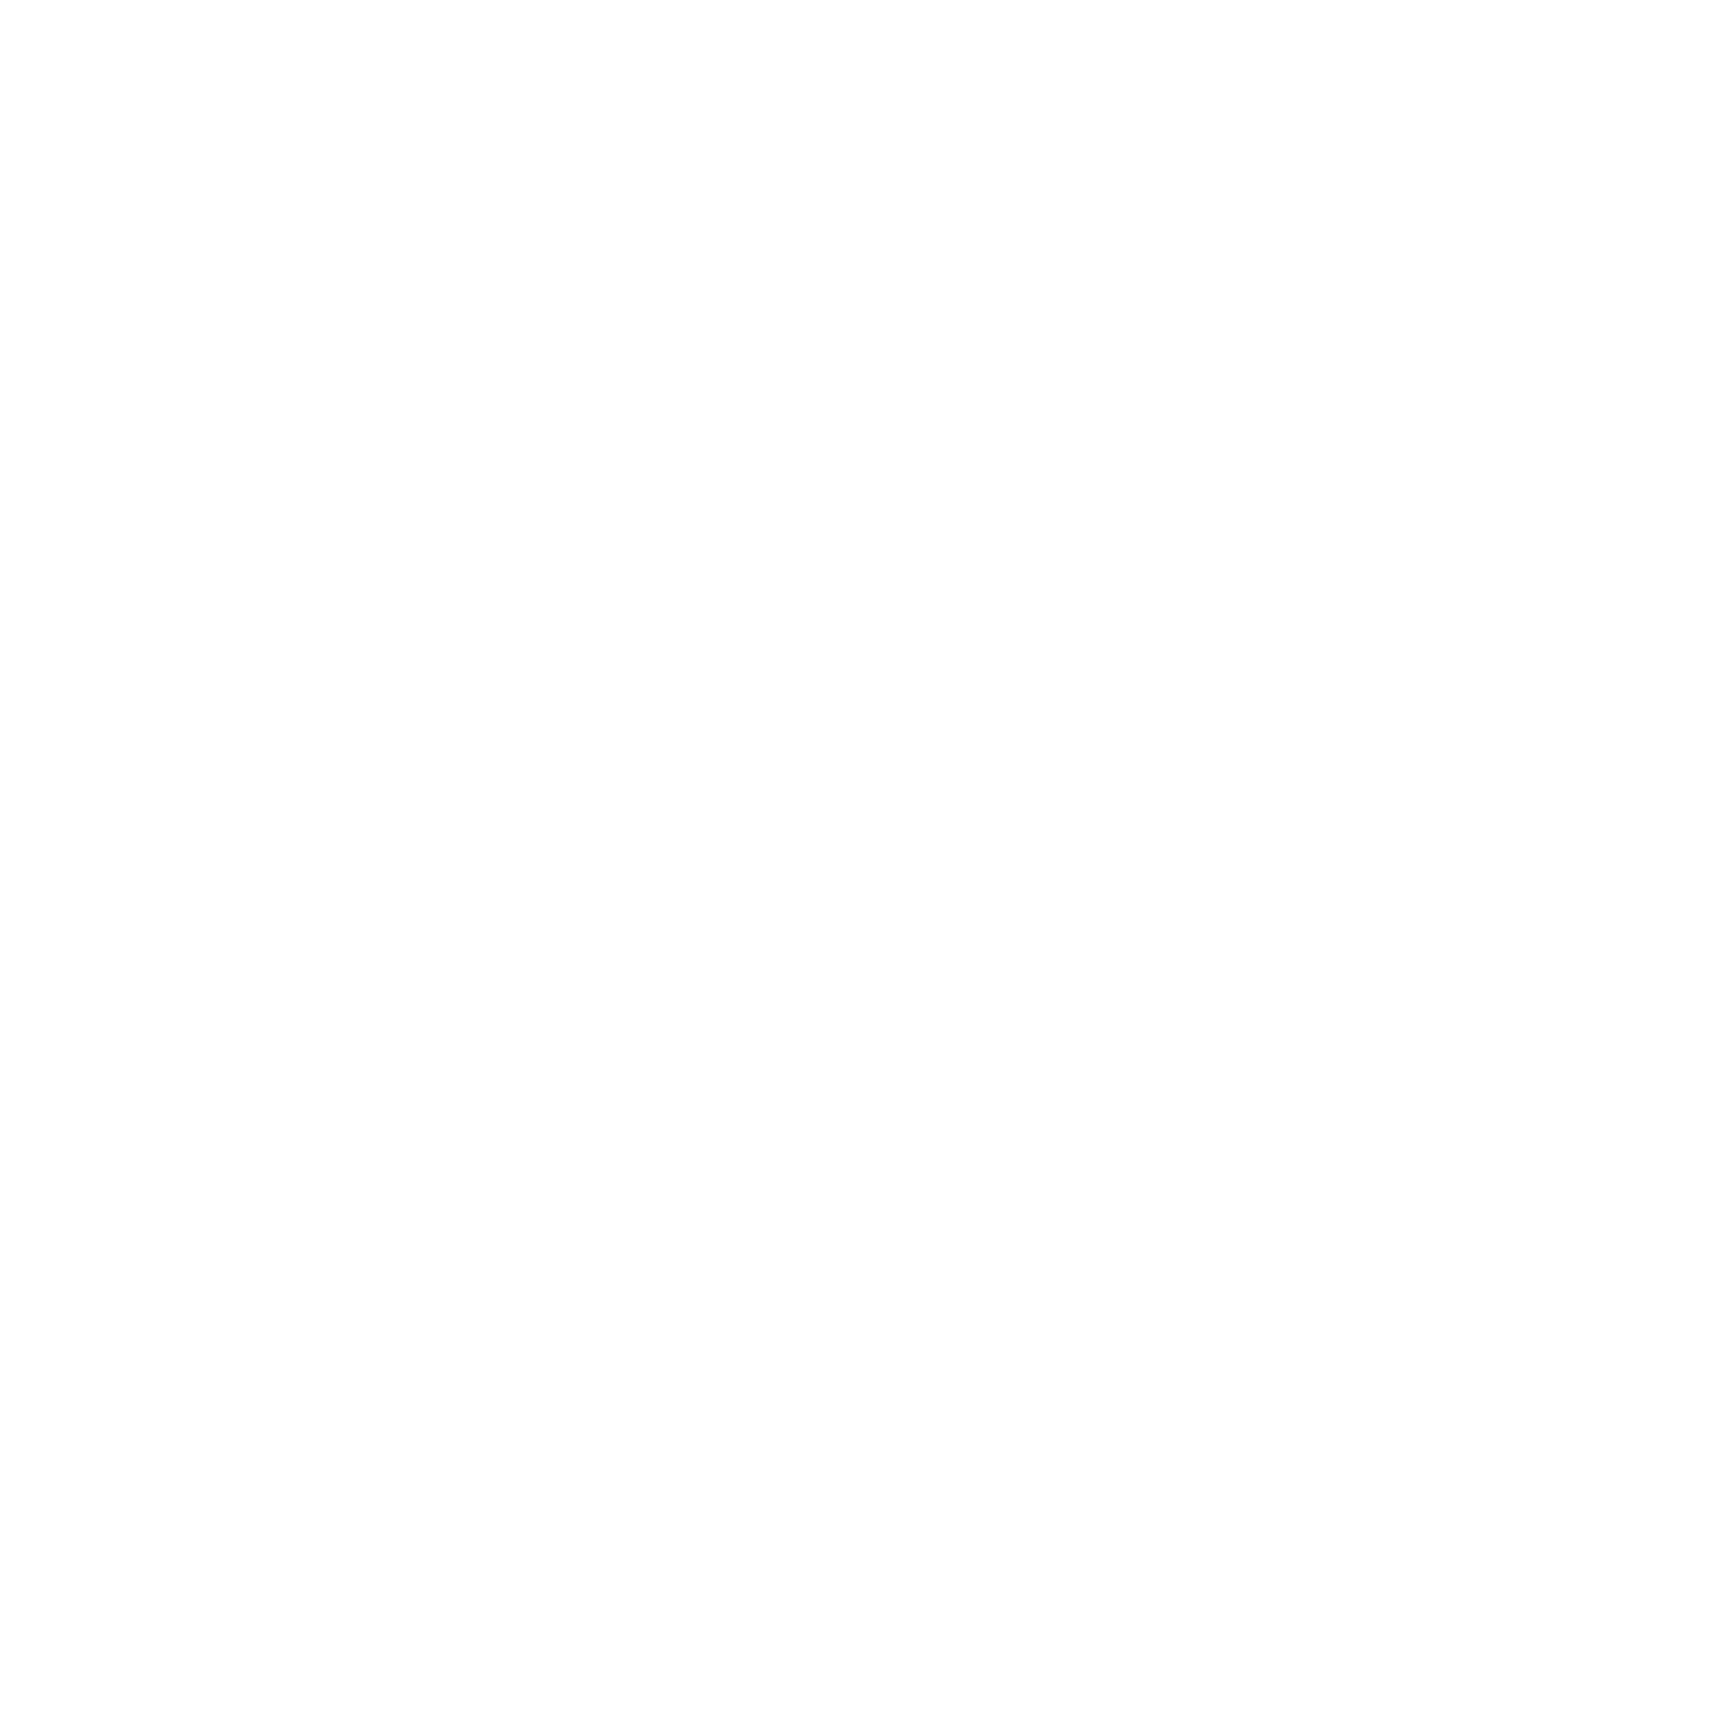 Keto certified